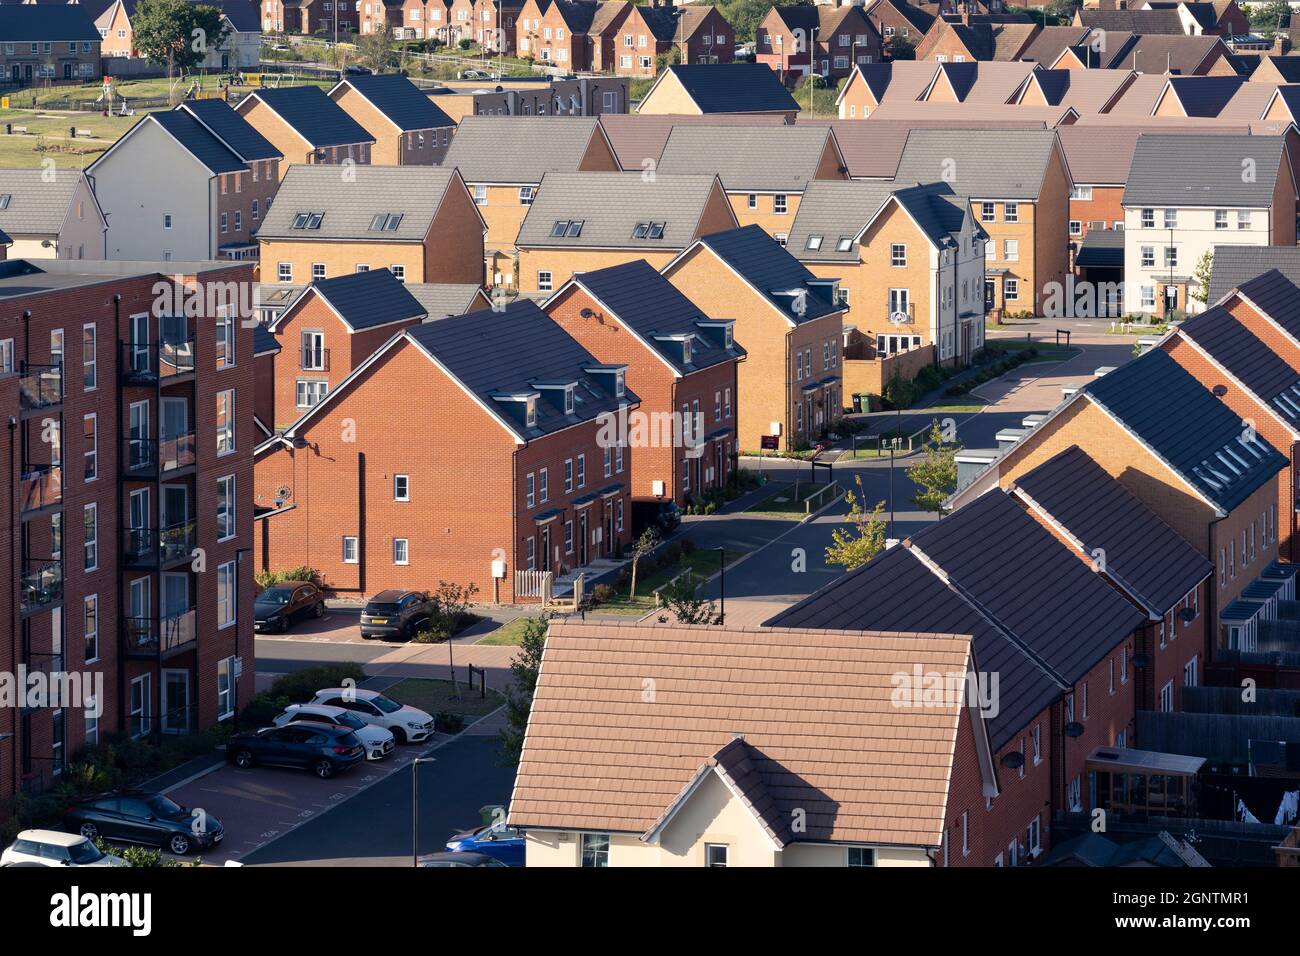 Vista aérea de casas adosadas y bloques de pisos en la finca Chapel Gate en Basingstoke, Reino Unido. Concepto: Alquiler, mercado de alquiler, mercado inmobiliario Foto de stock